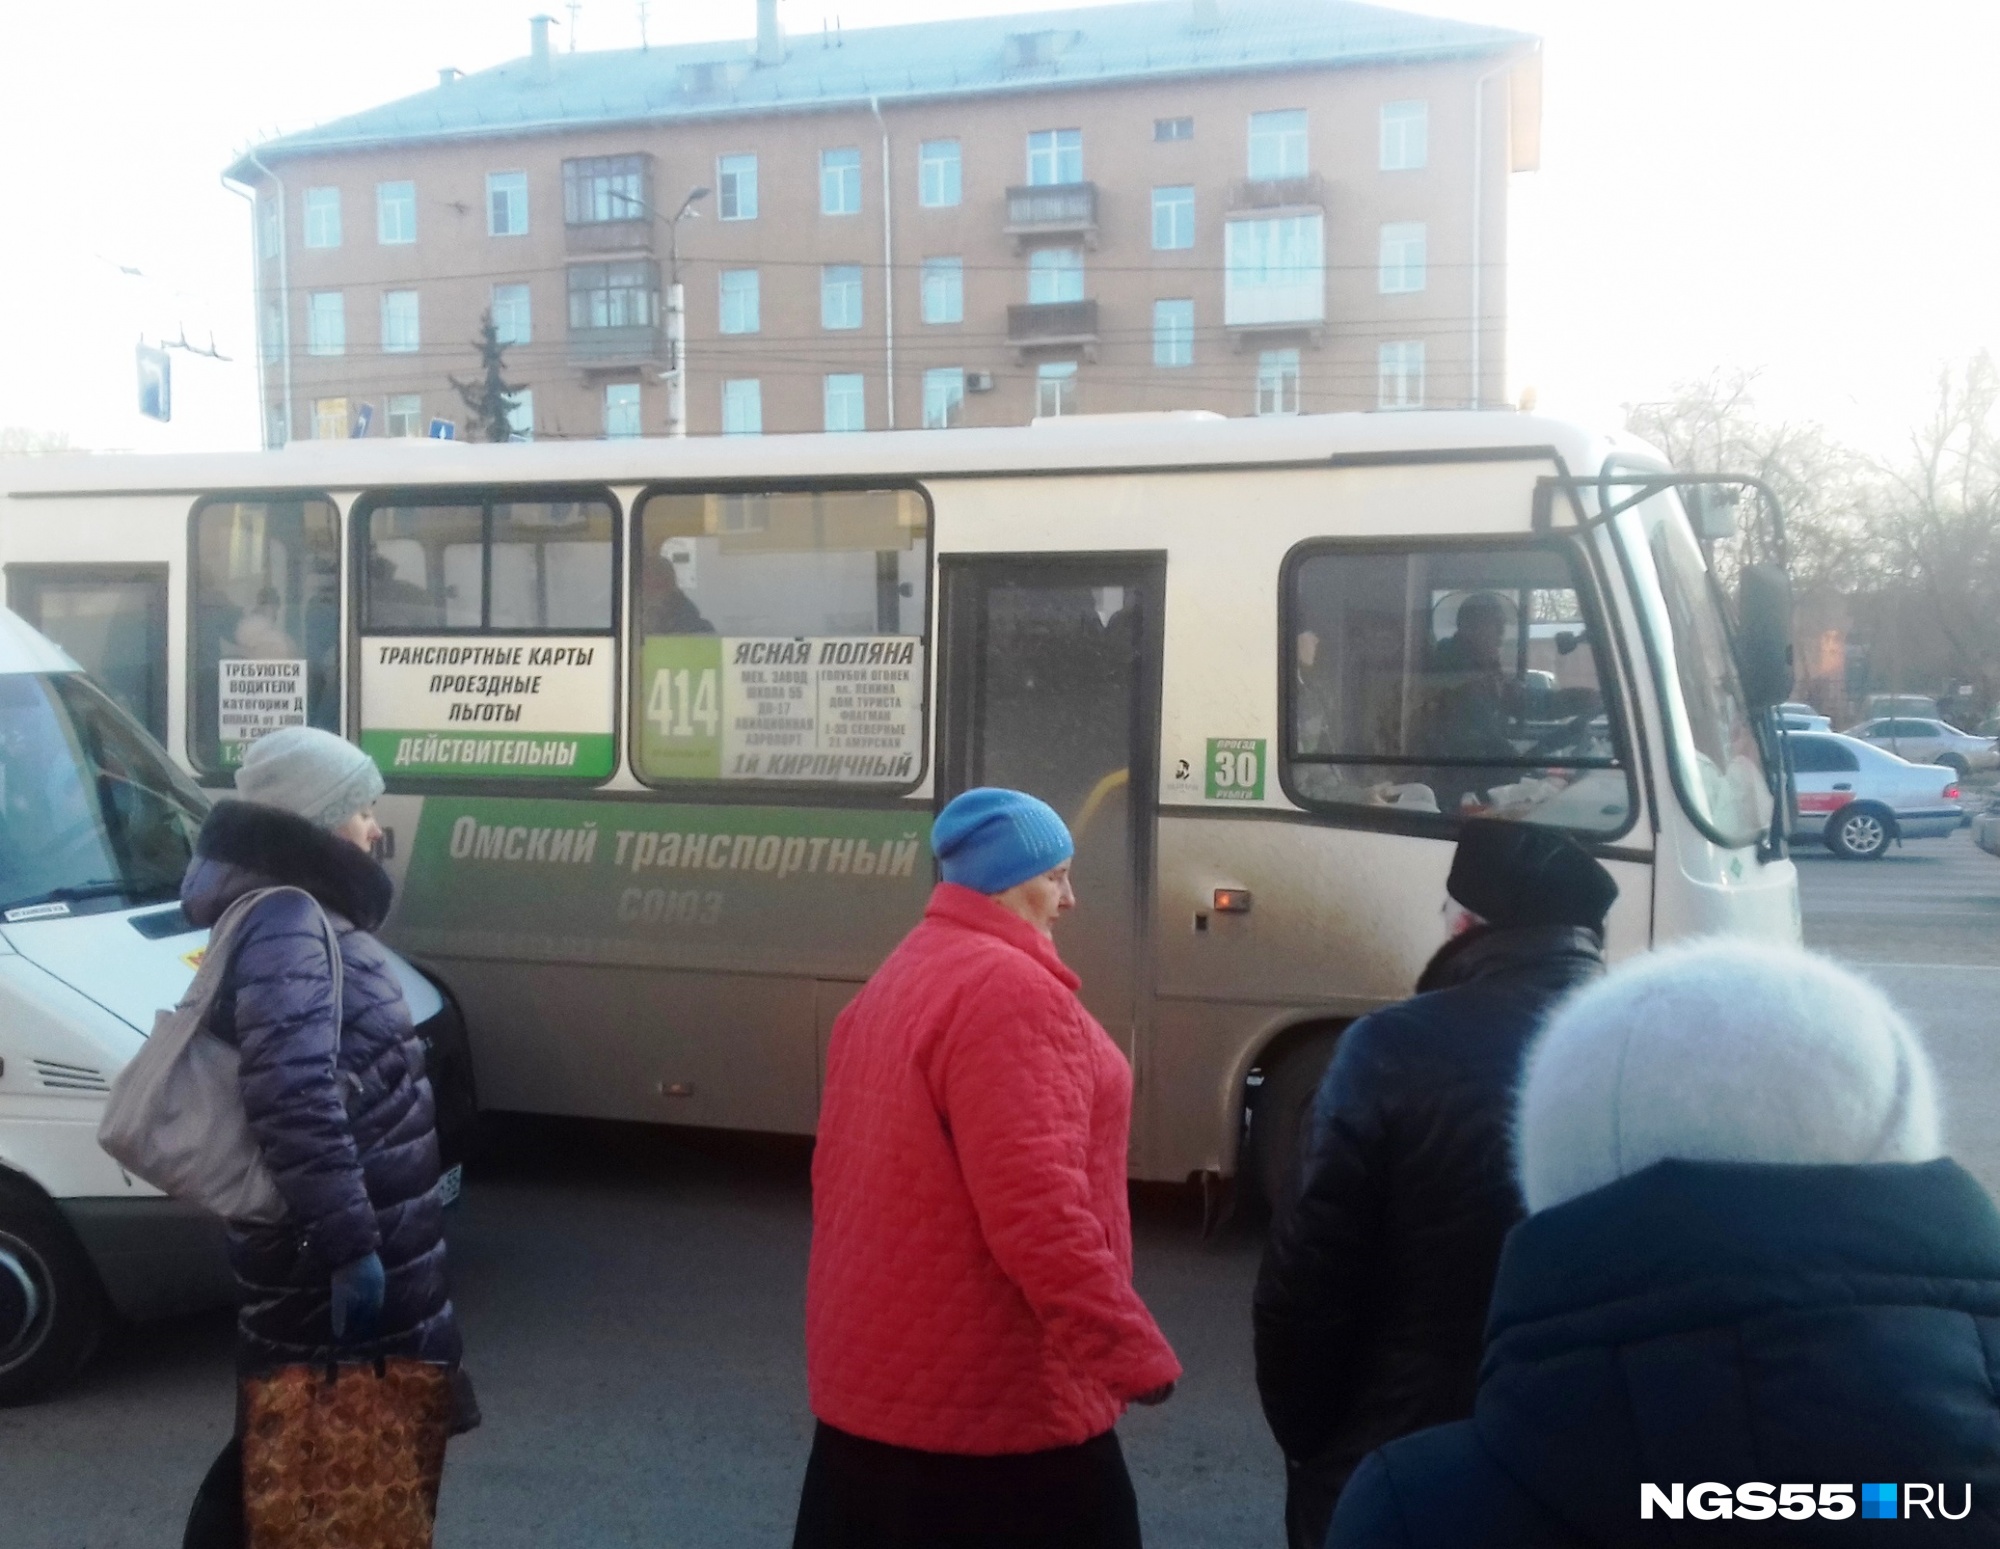 «Омский транспортный союз» отложил повышение цен в маршрутках по безналу